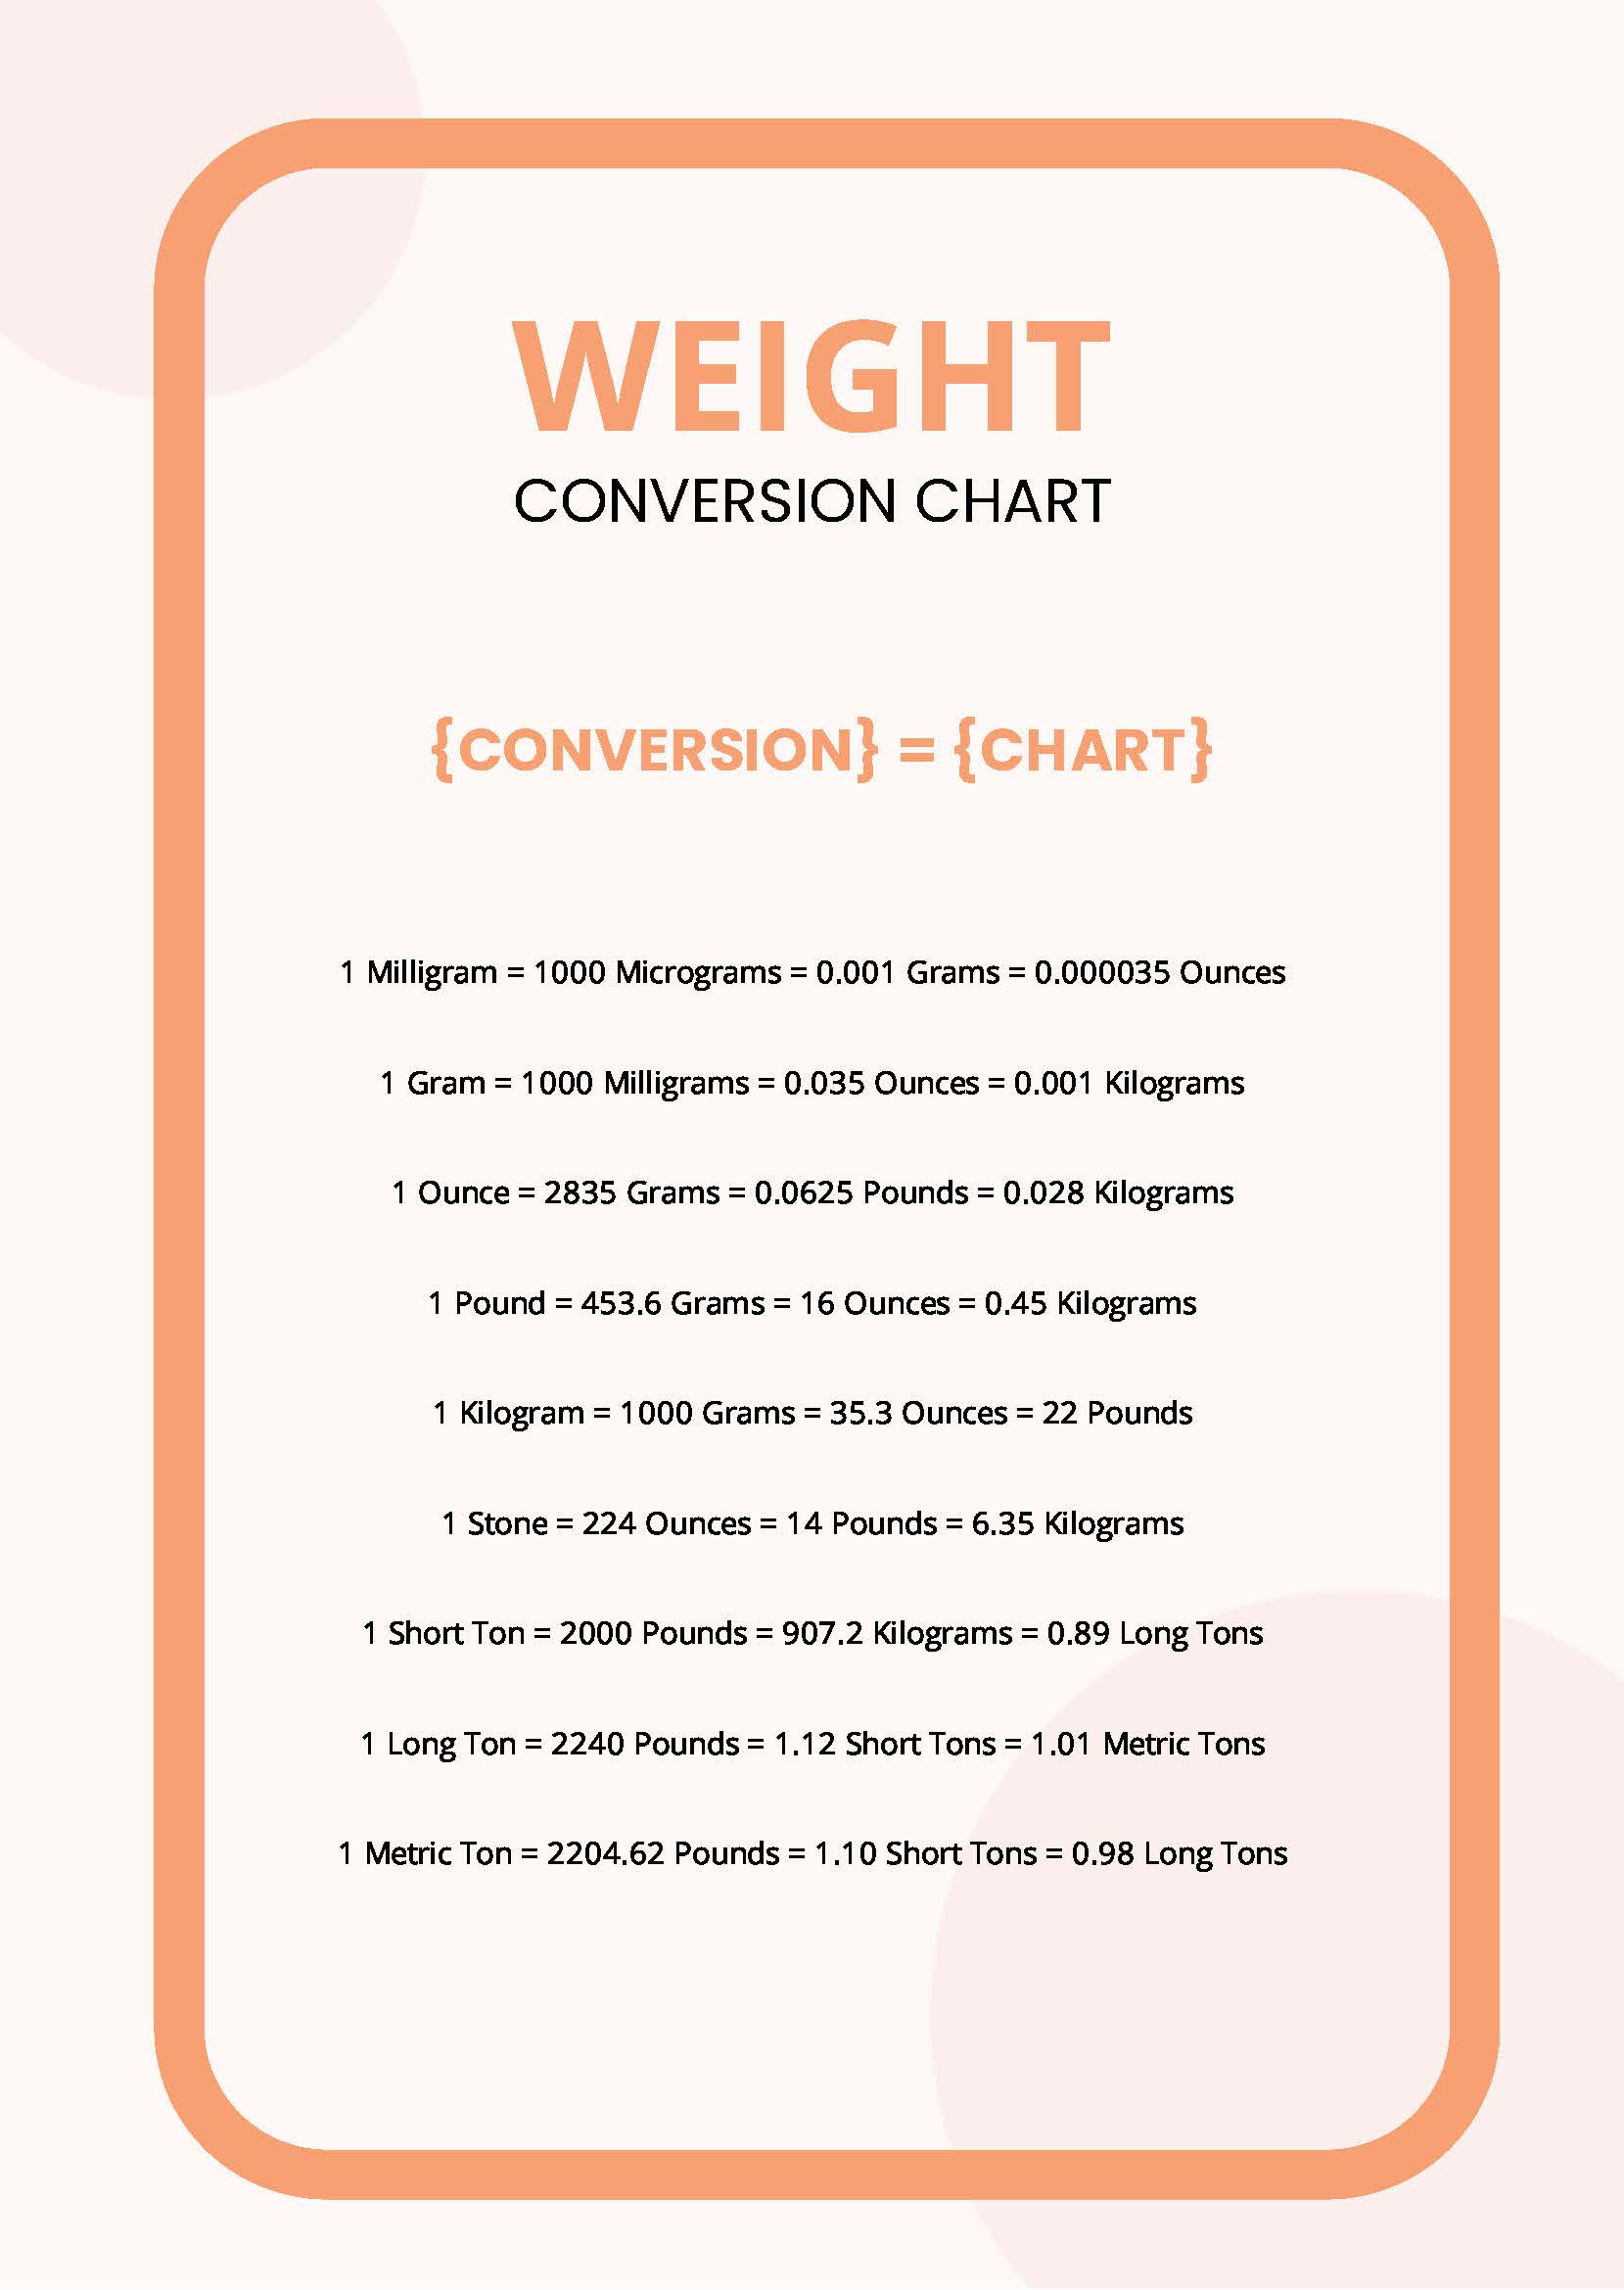 https://images.template.net/97088/weight-conversion-chart-6rzia.jpg